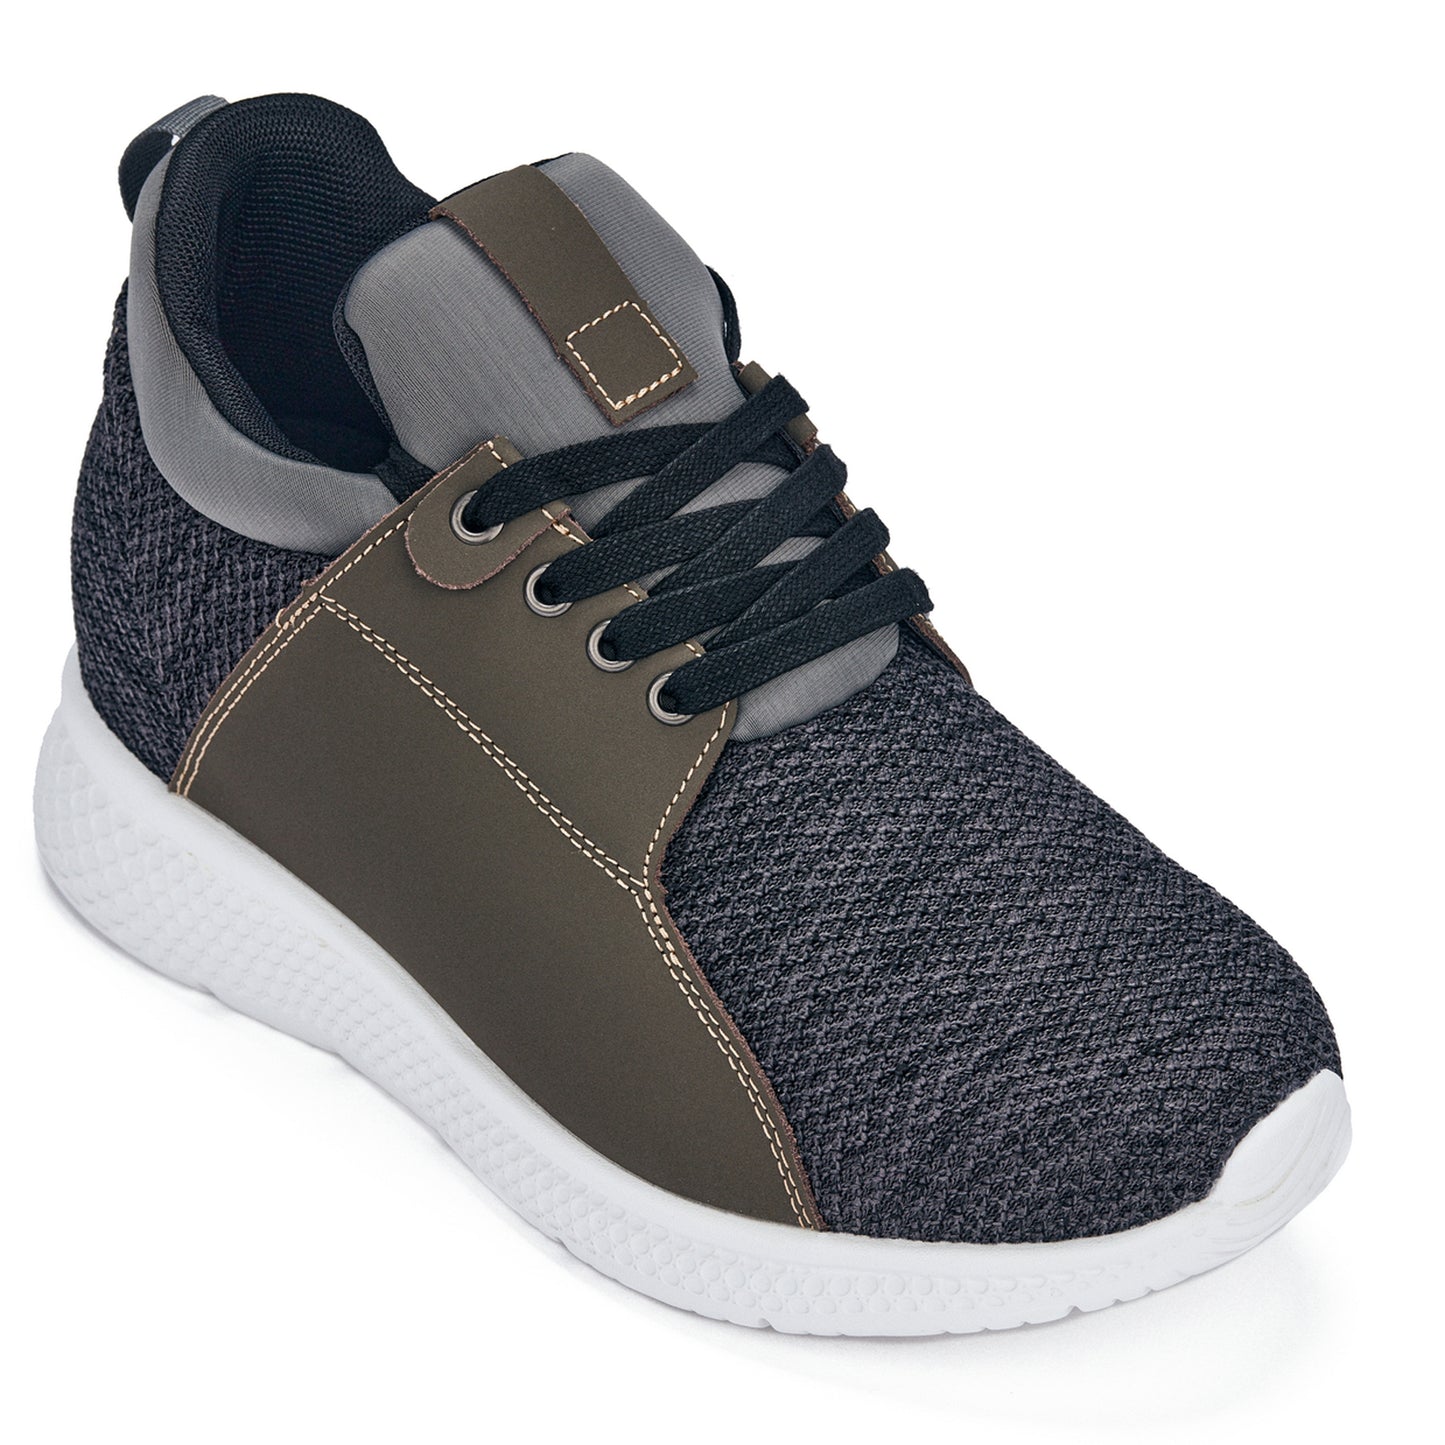 CALTO 3,2-inch grotere houtskool verhogende herensneakers - H71923